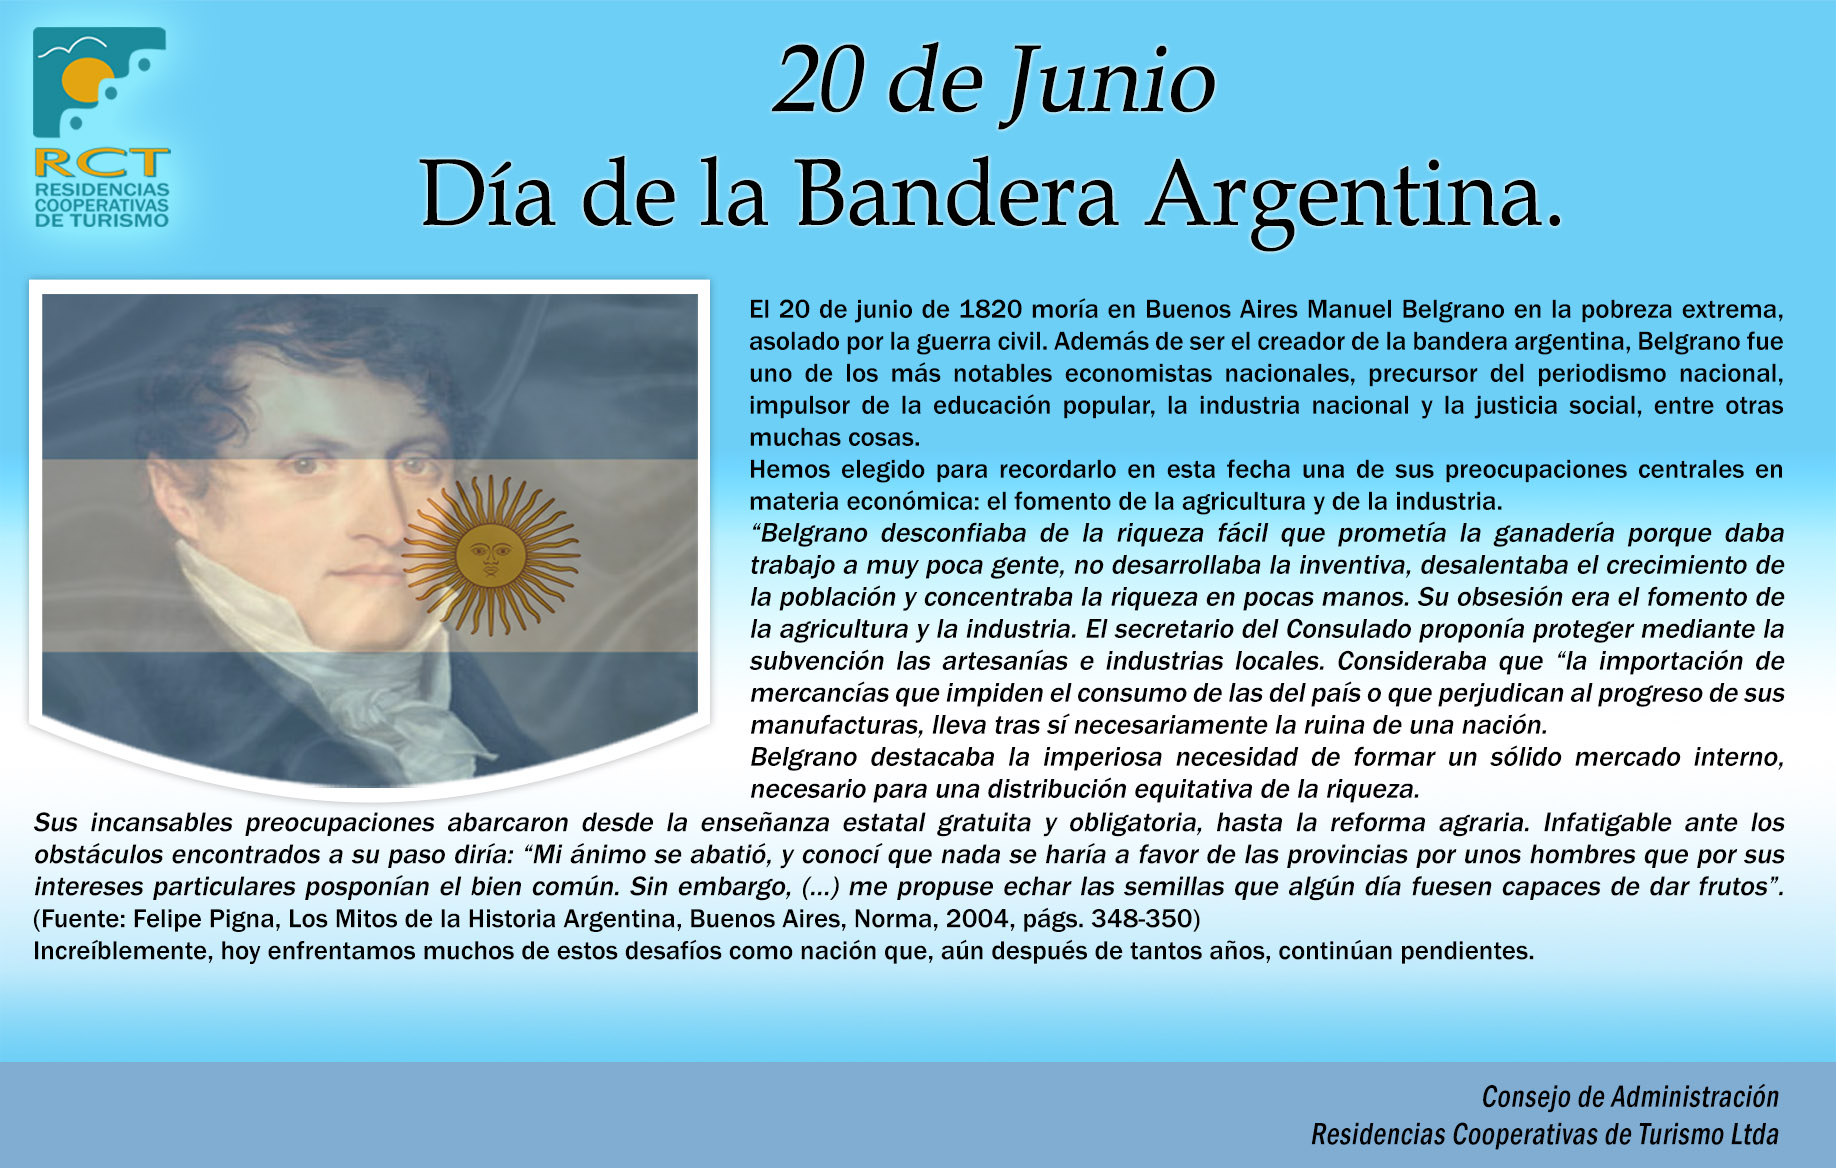 Bandera Argentina - ¿Azul o celeste, de qué color es la bandera